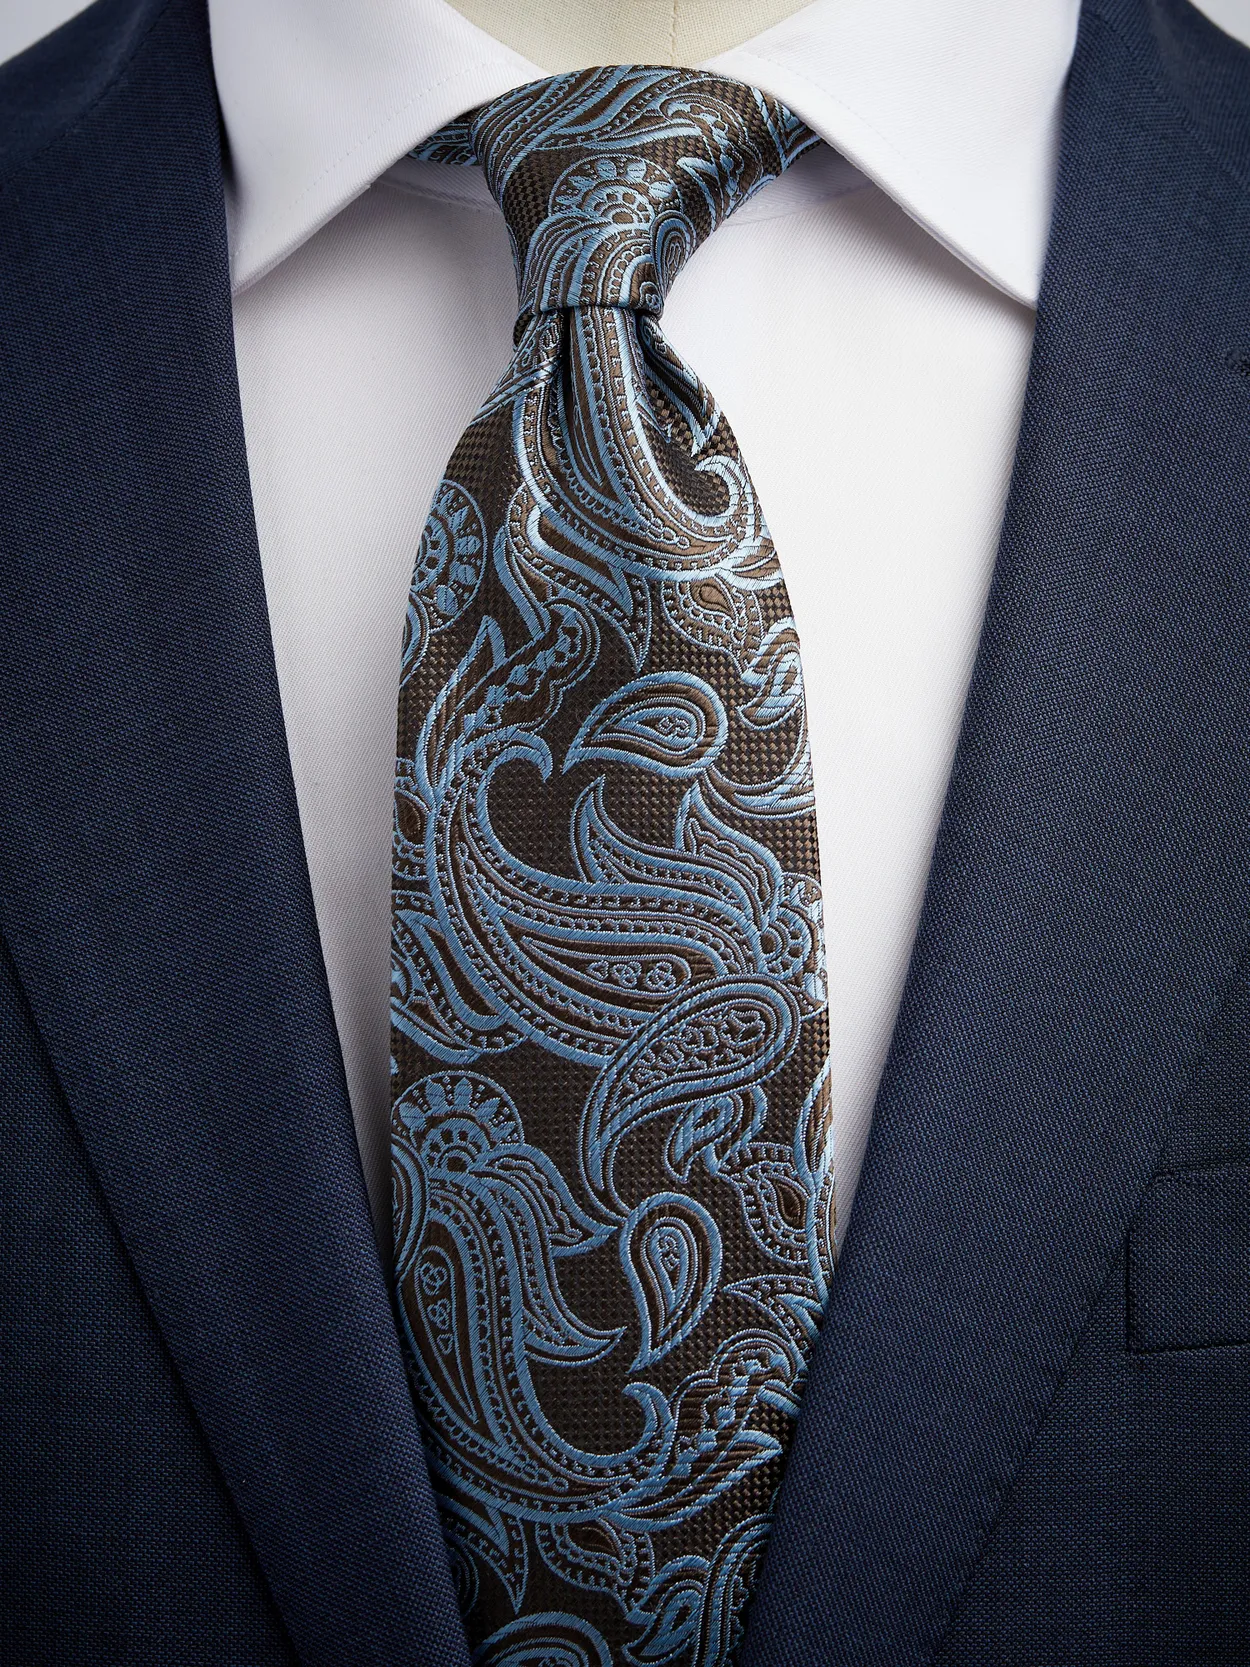 Brown & Blue Tie Paisley